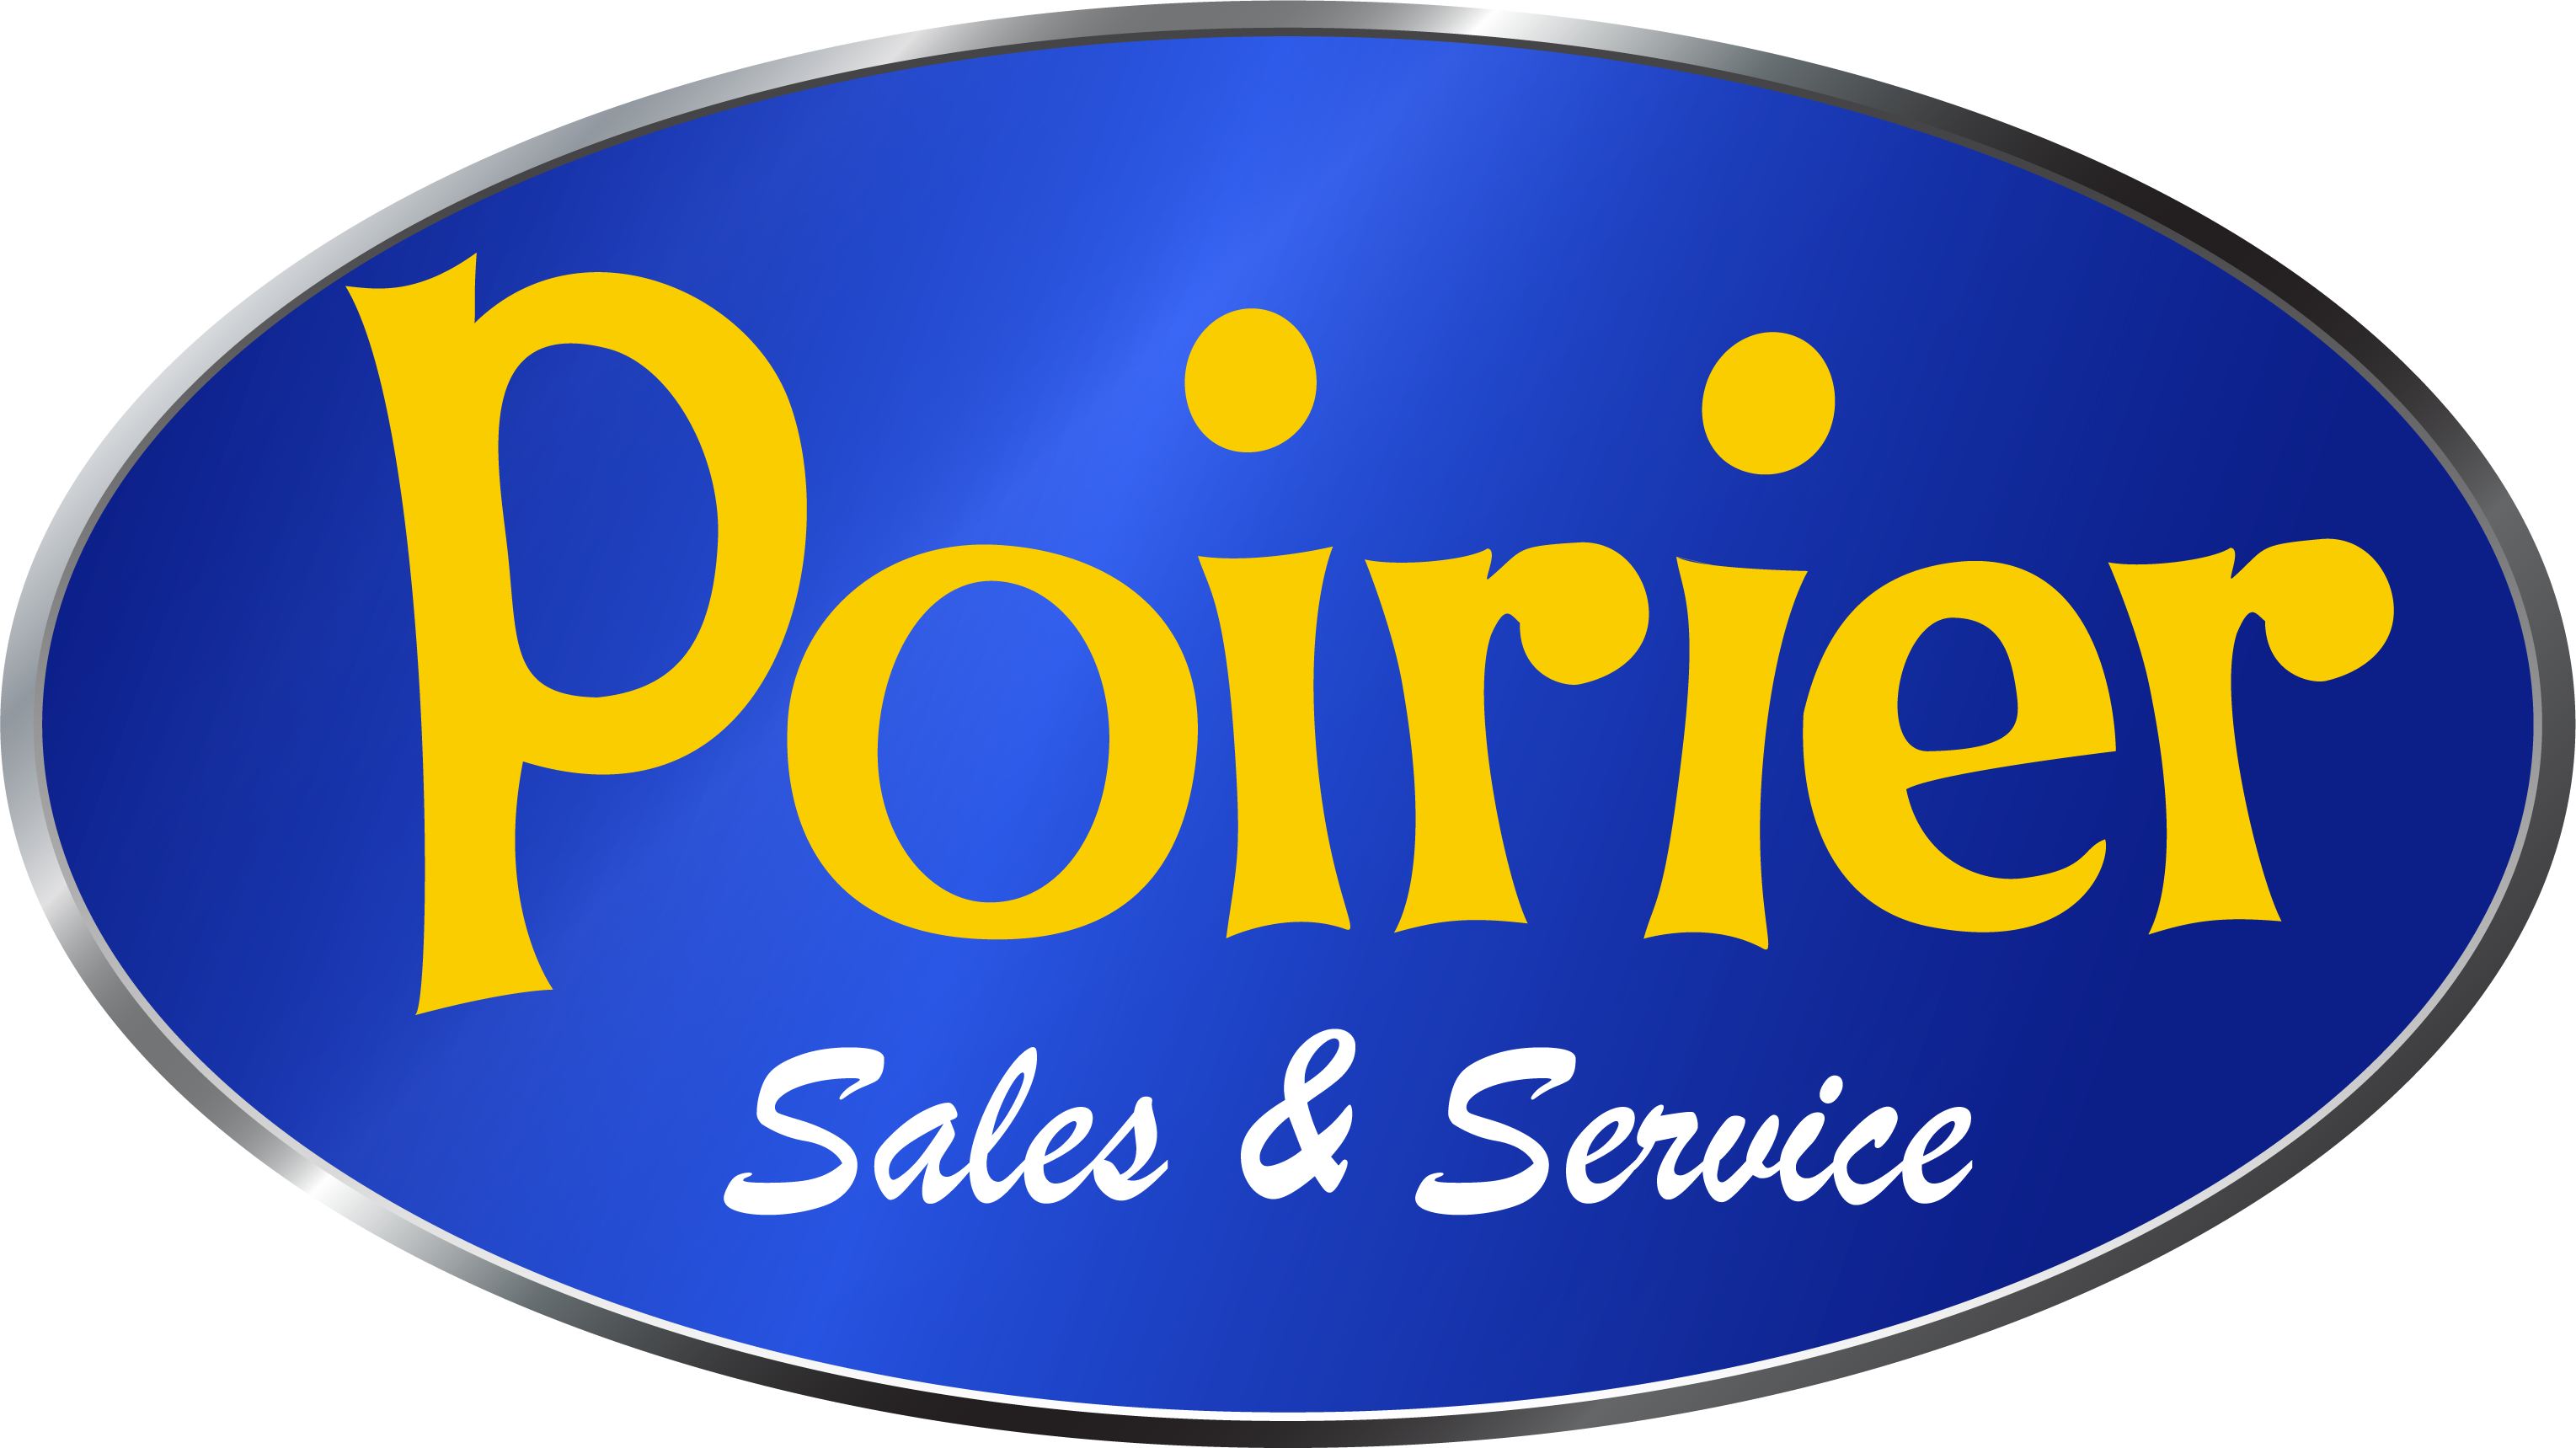 Poirier Sales